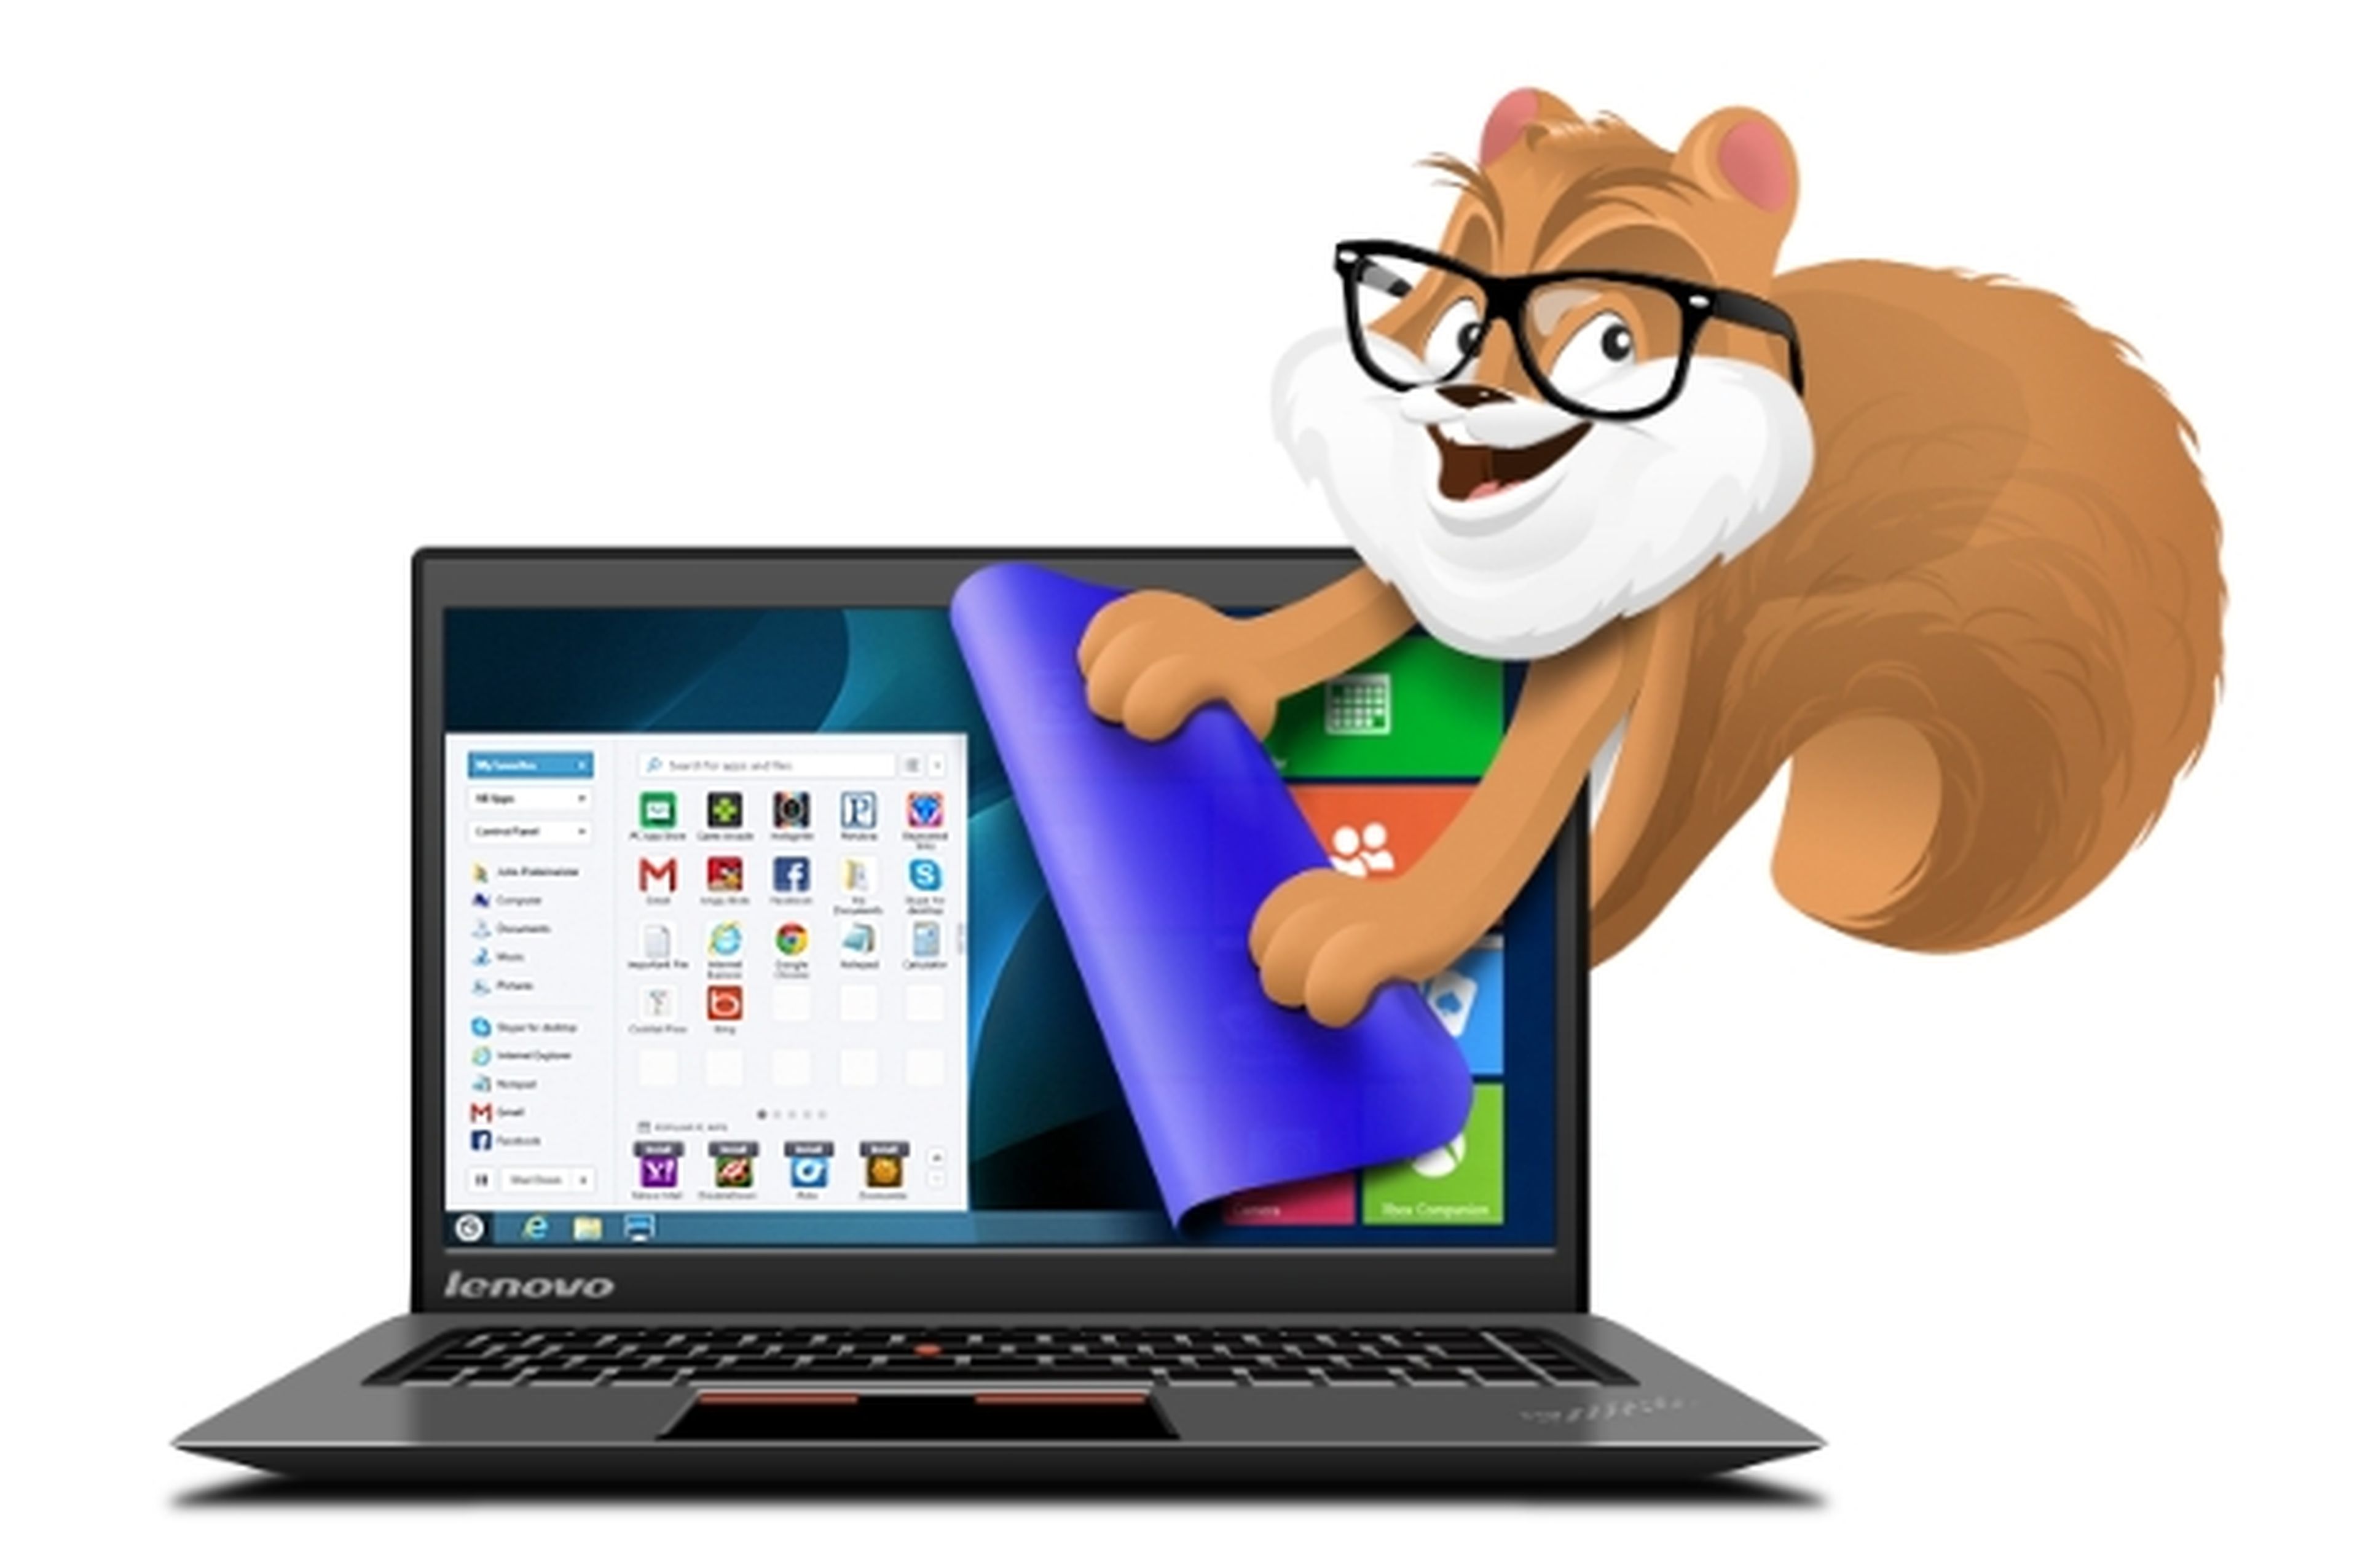 Lenovo añade Botón de Inicio a sus PCs con Windows 8